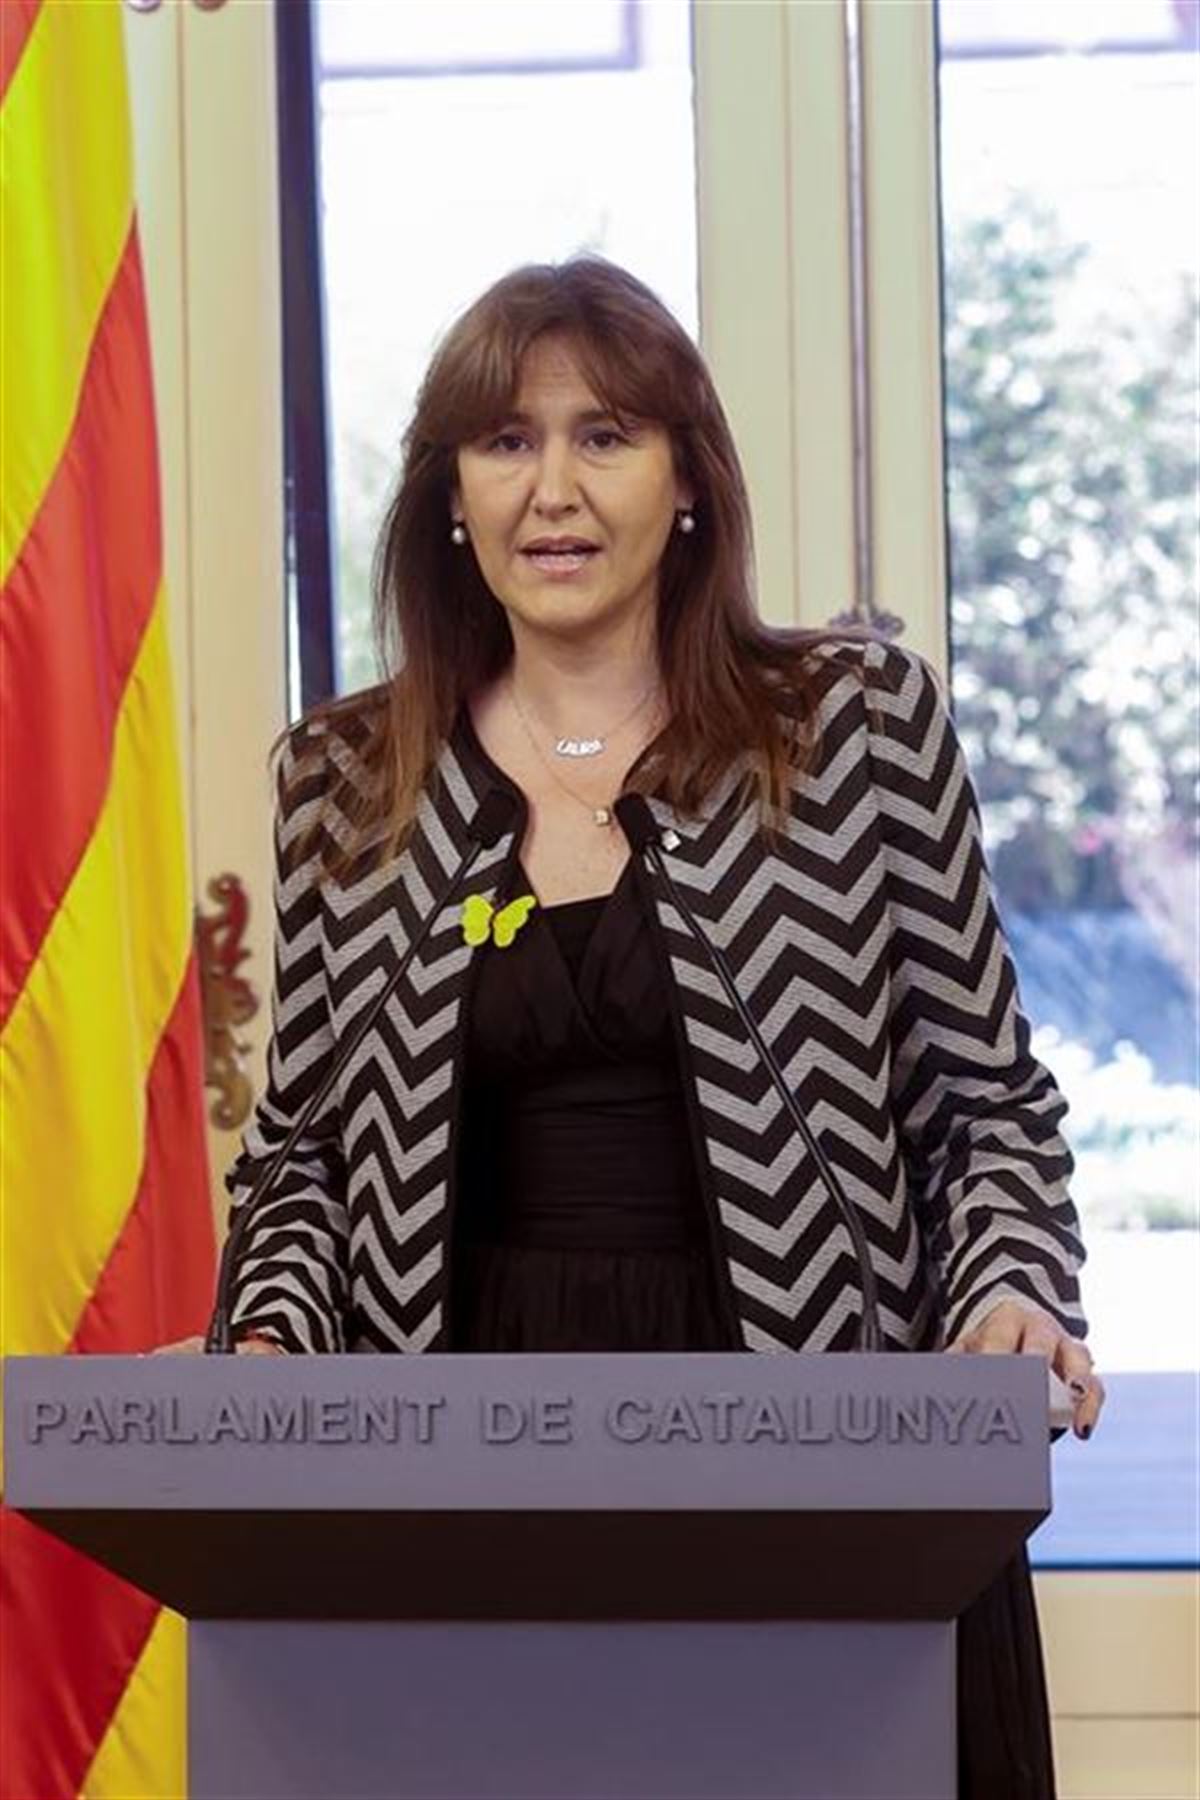 Laura Borras Kataluniako Parlamentuko presidentea. Argazkia: Efe